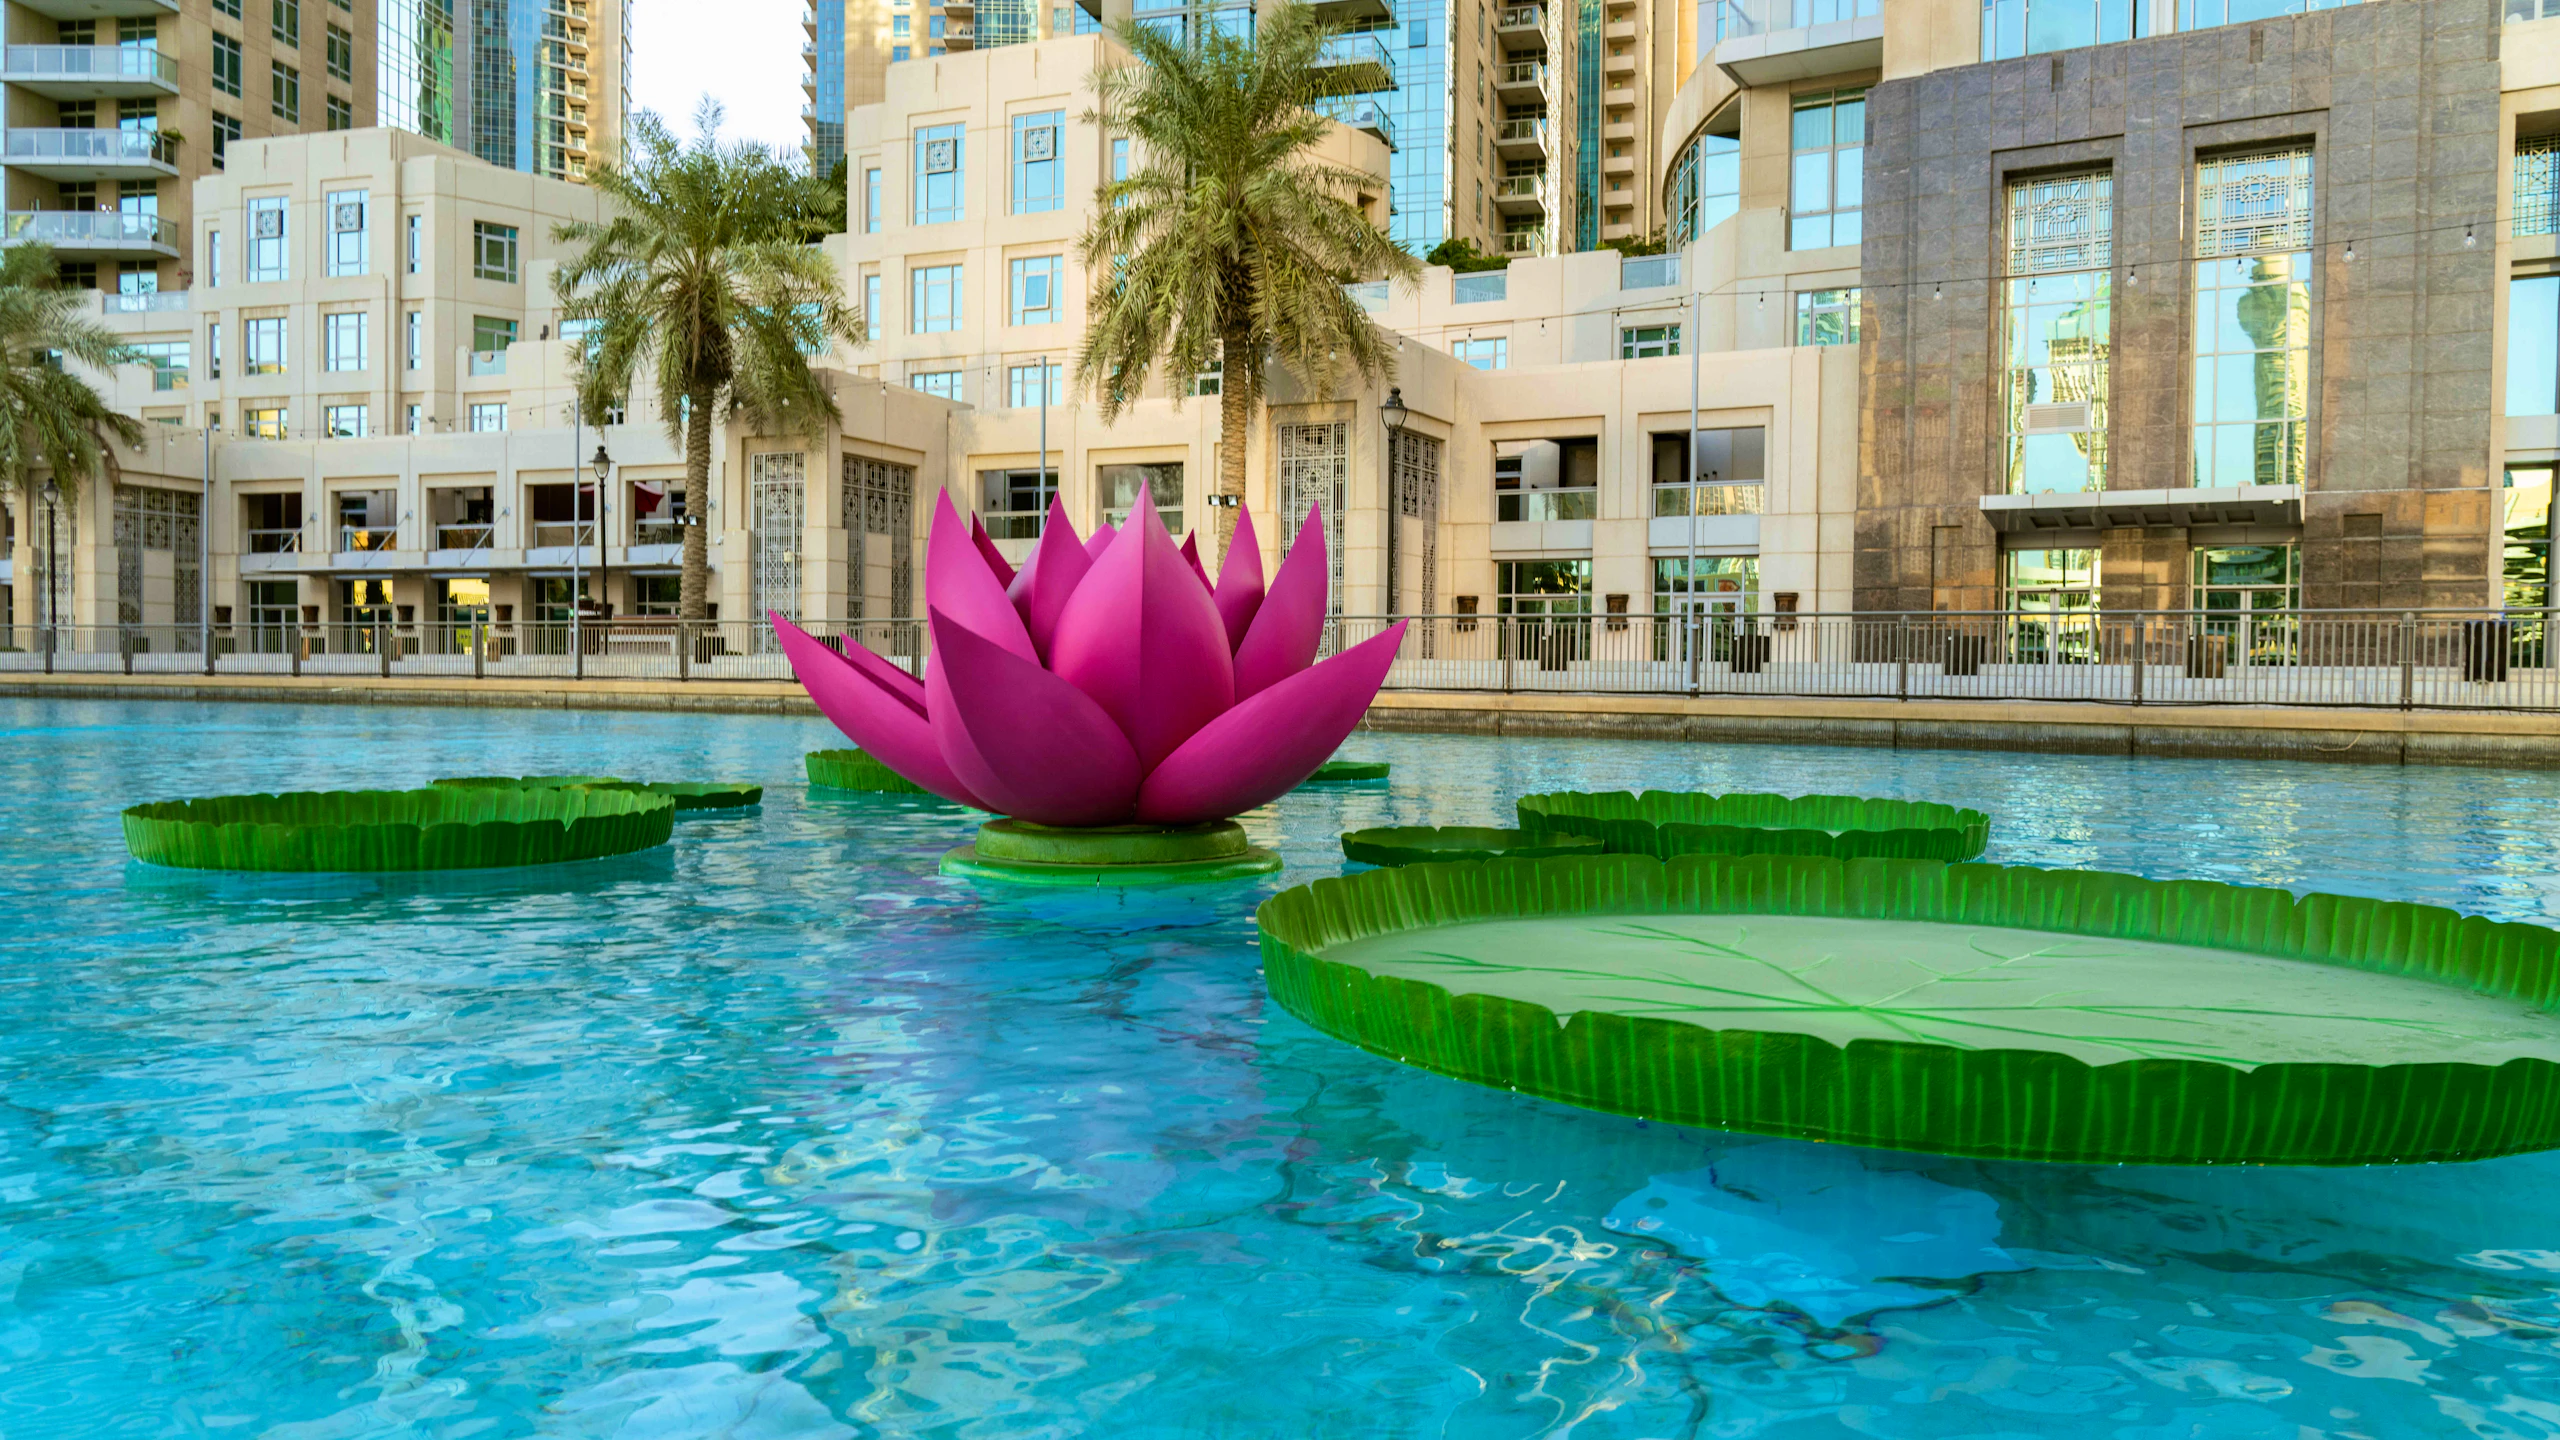 Dubai Fountain Flamingos Boat Experience Location